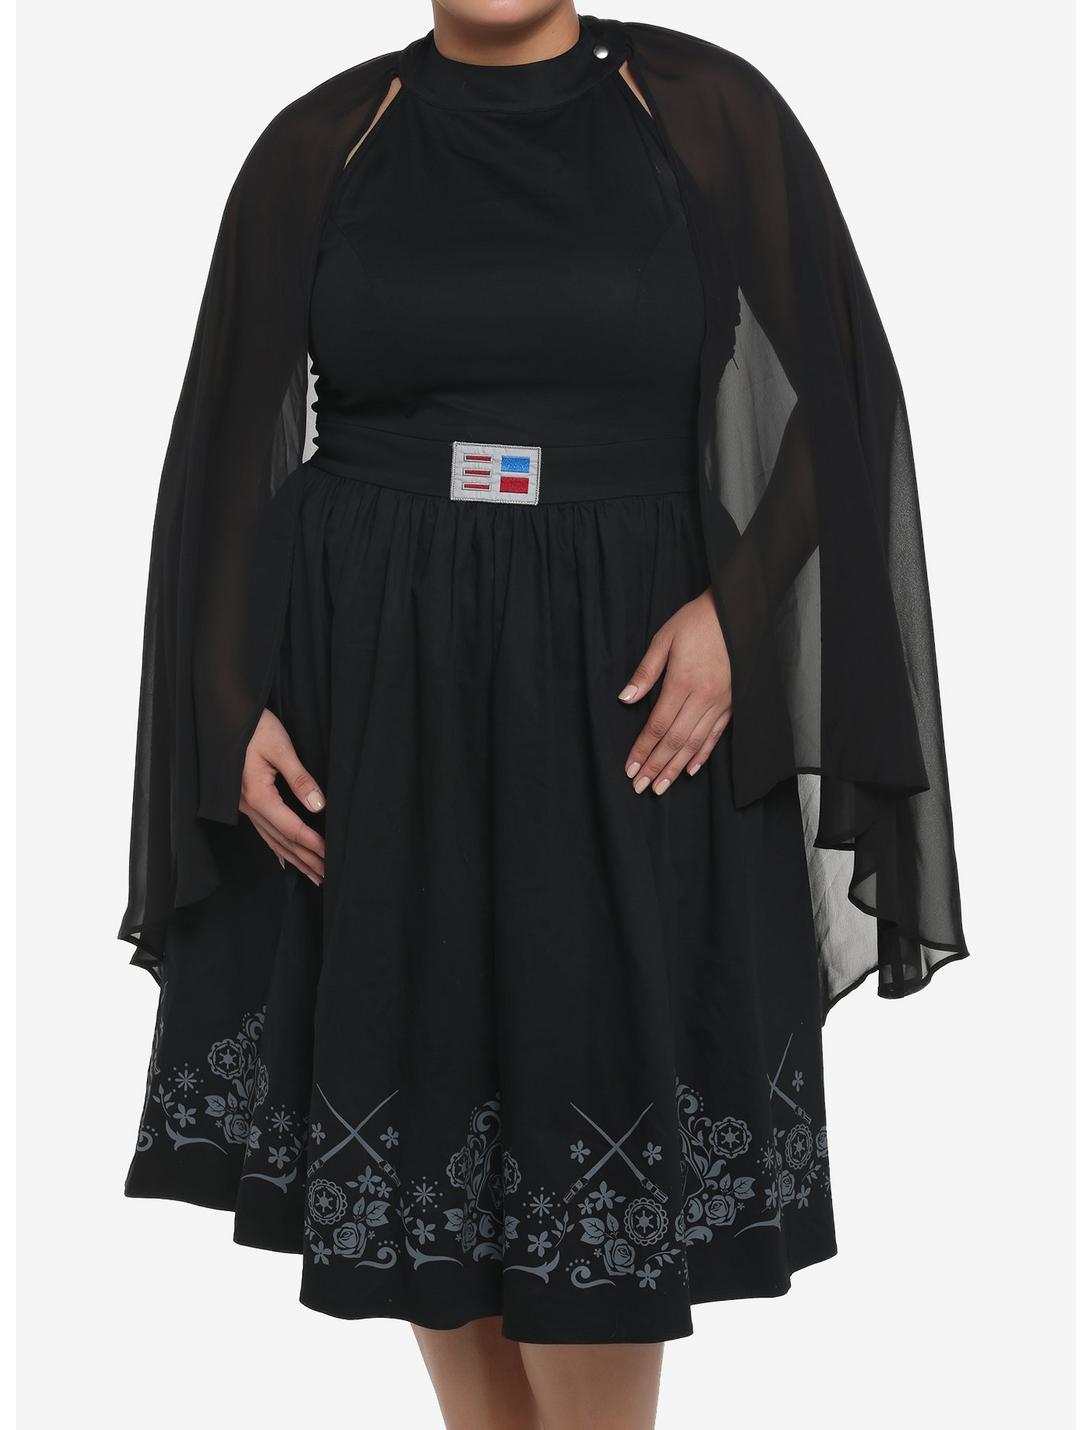 Her Universe Star Wars Darth Vader Cape Dress Plus Size, BLACK, hi-res